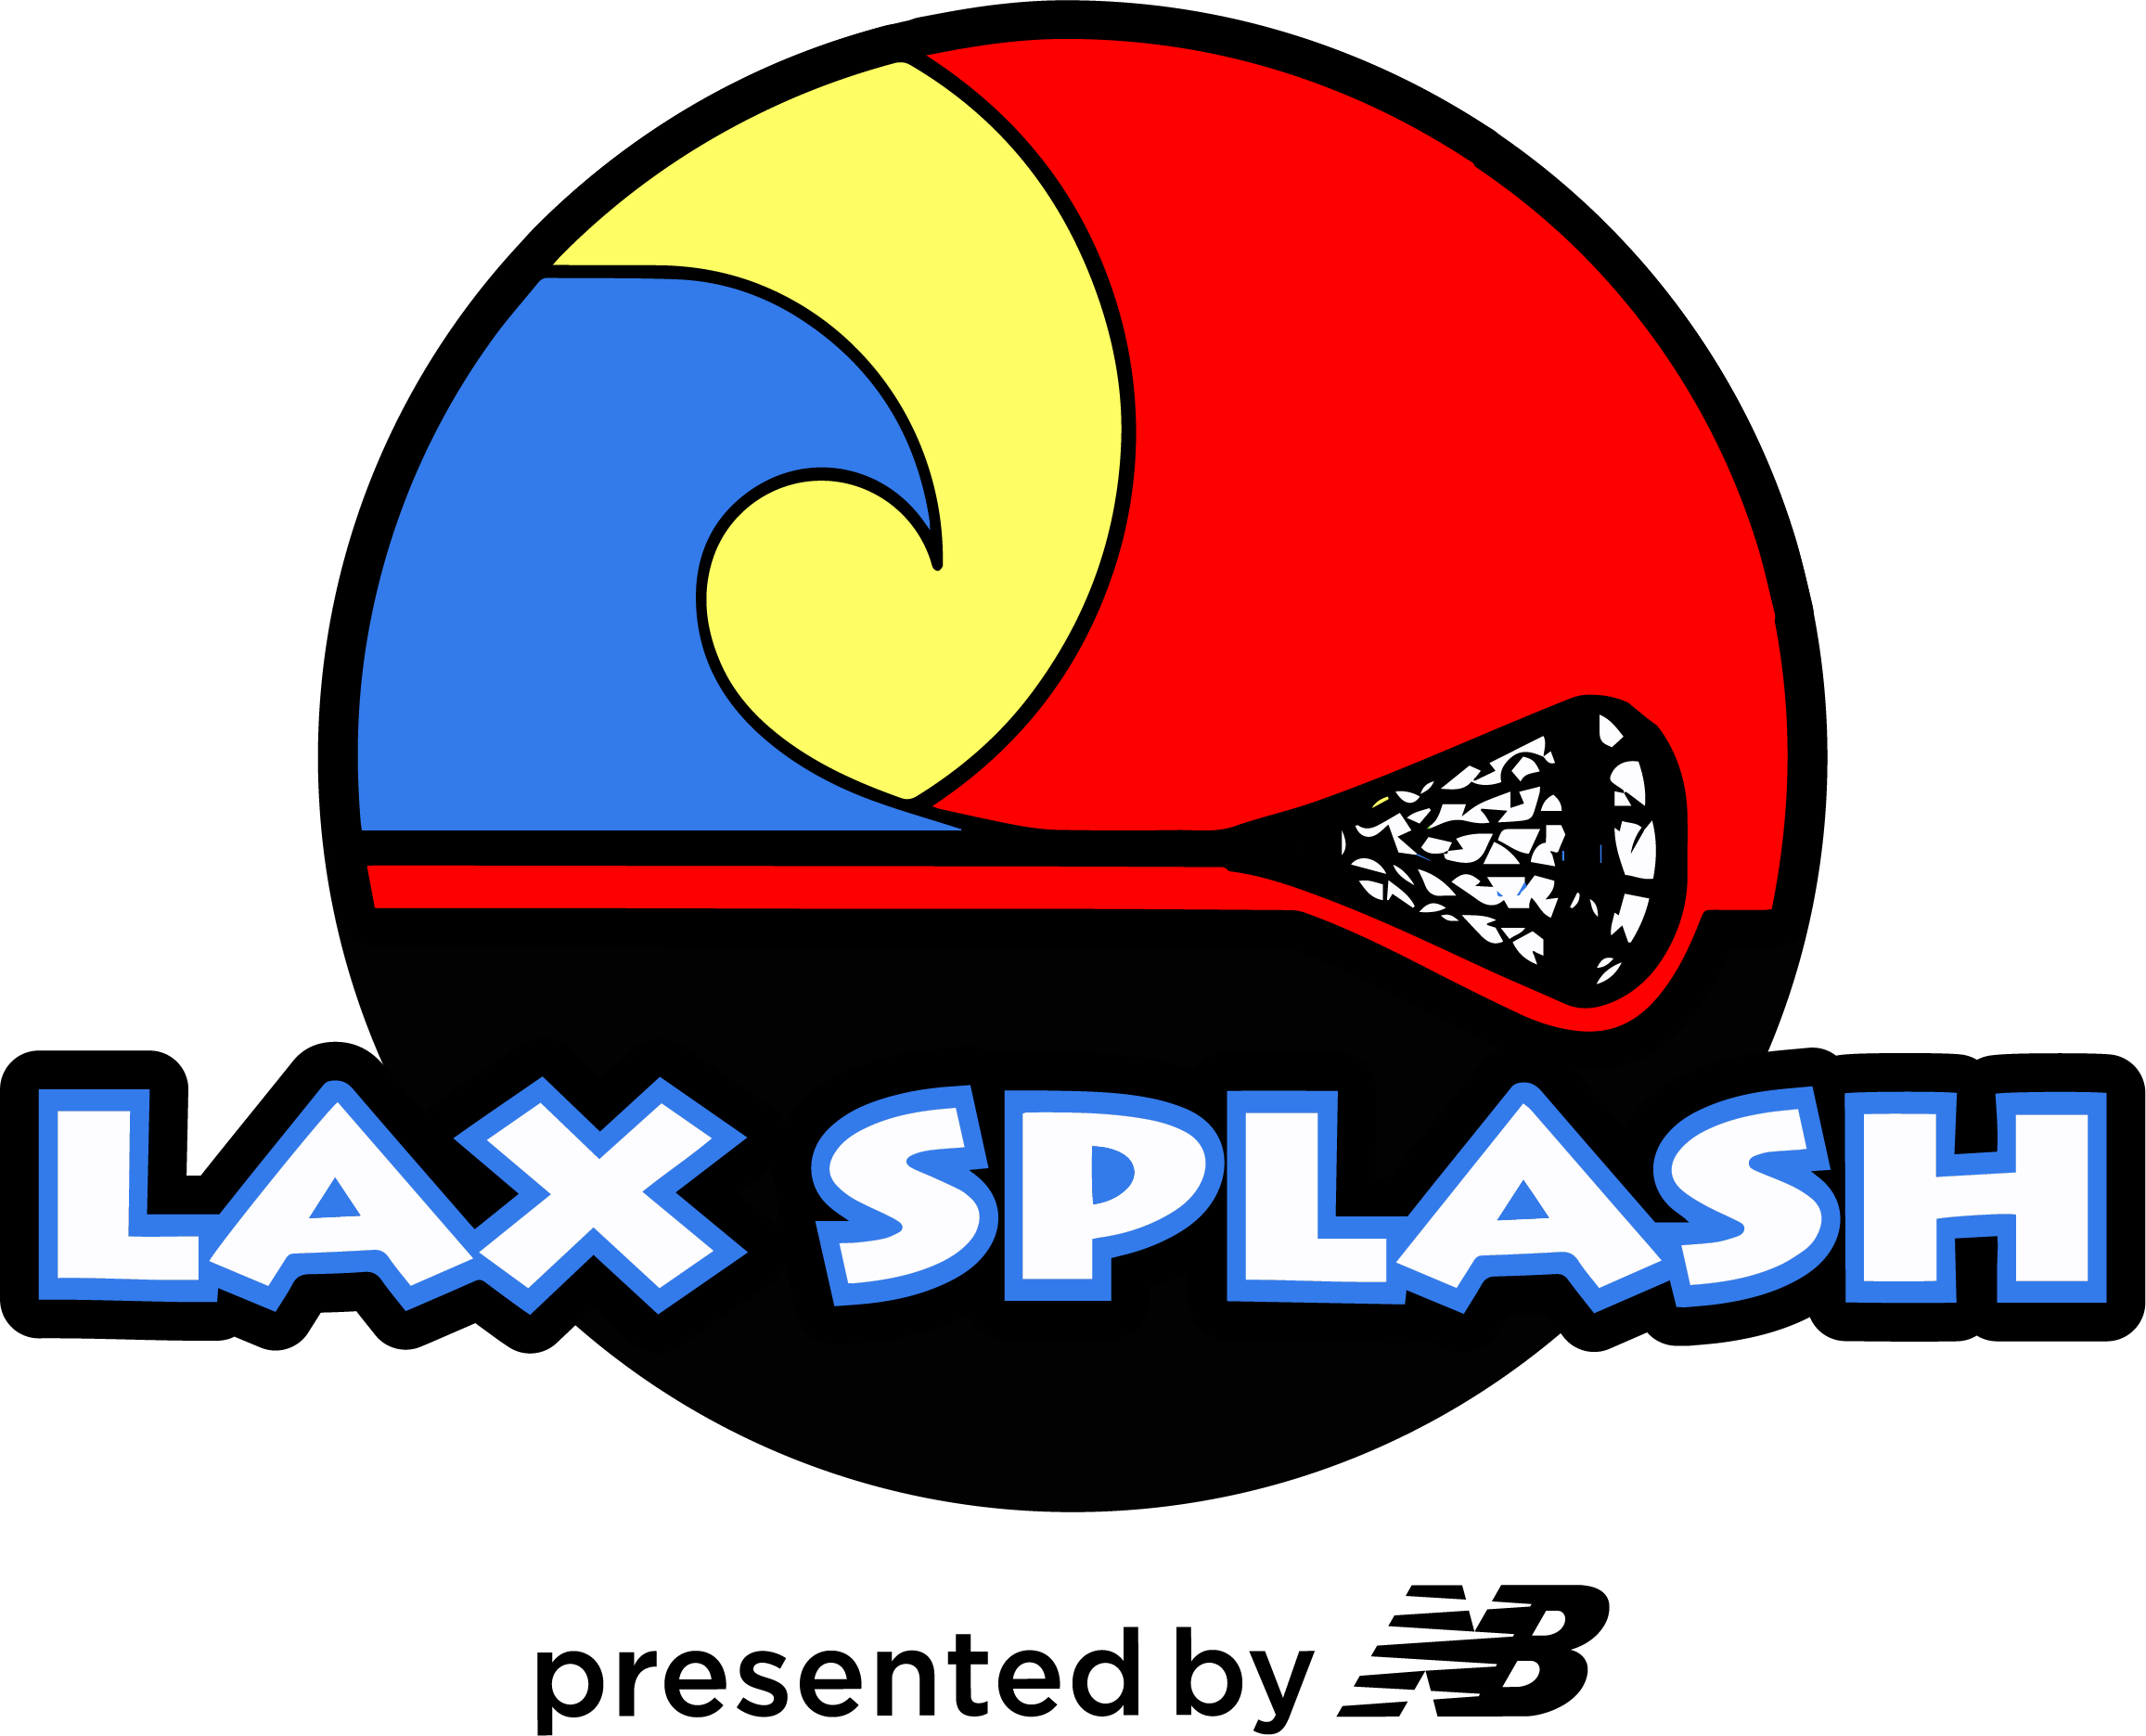 Lax Splash